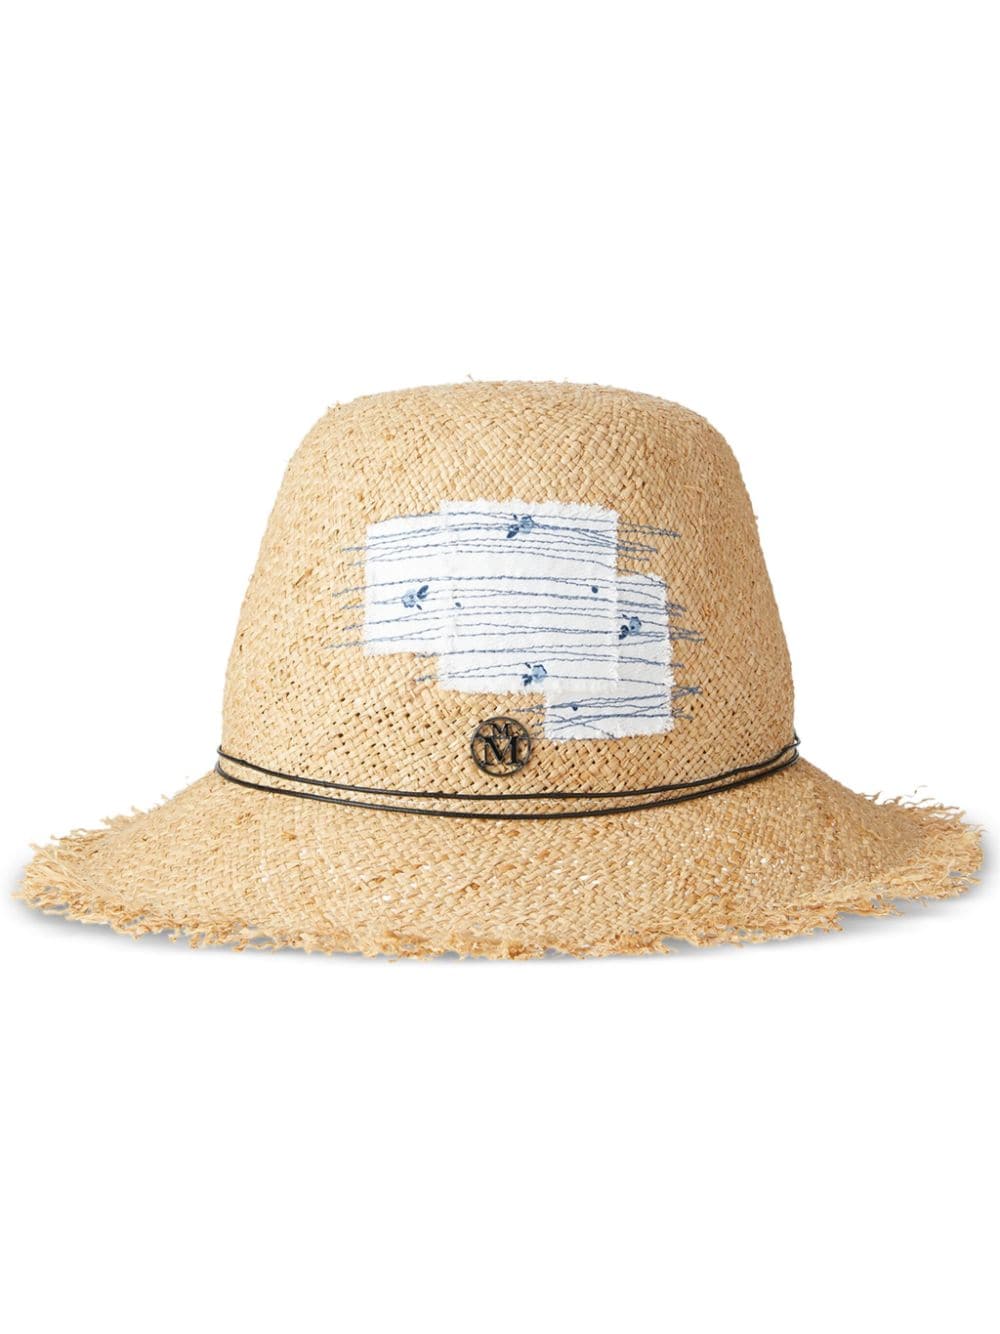 Maison Michel Candice straw fedora hat - Neutrals von Maison Michel